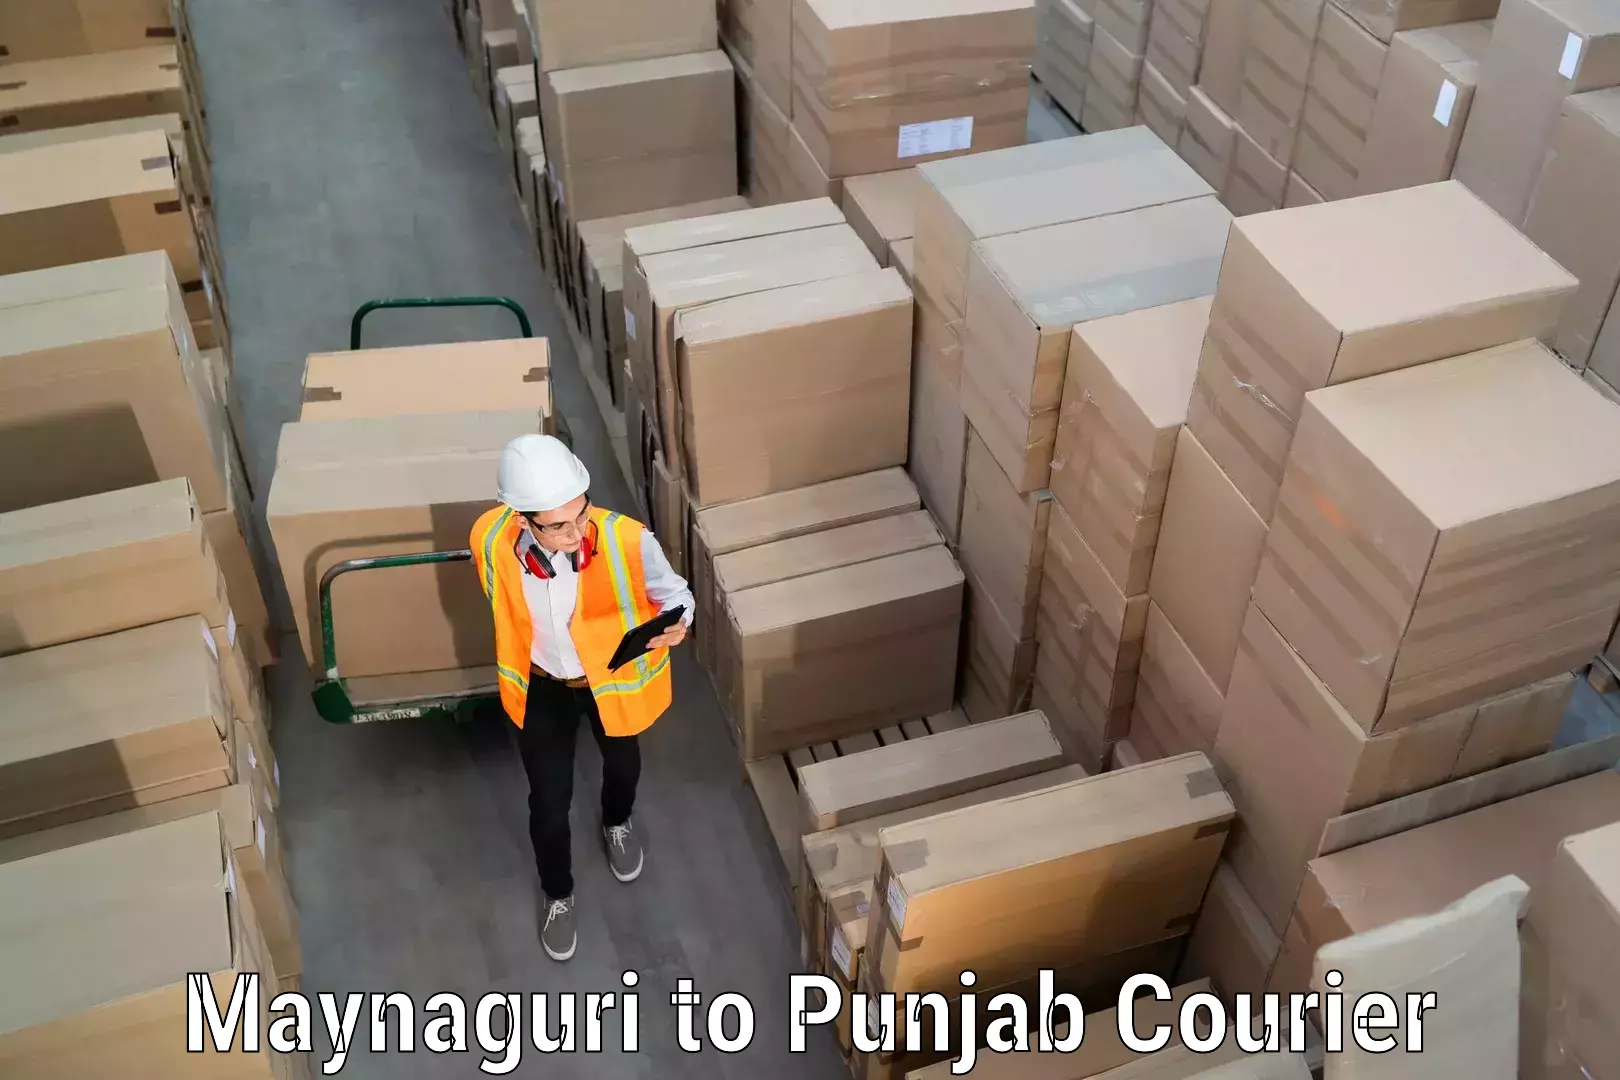 Reliable furniture transport Maynaguri to Punjab